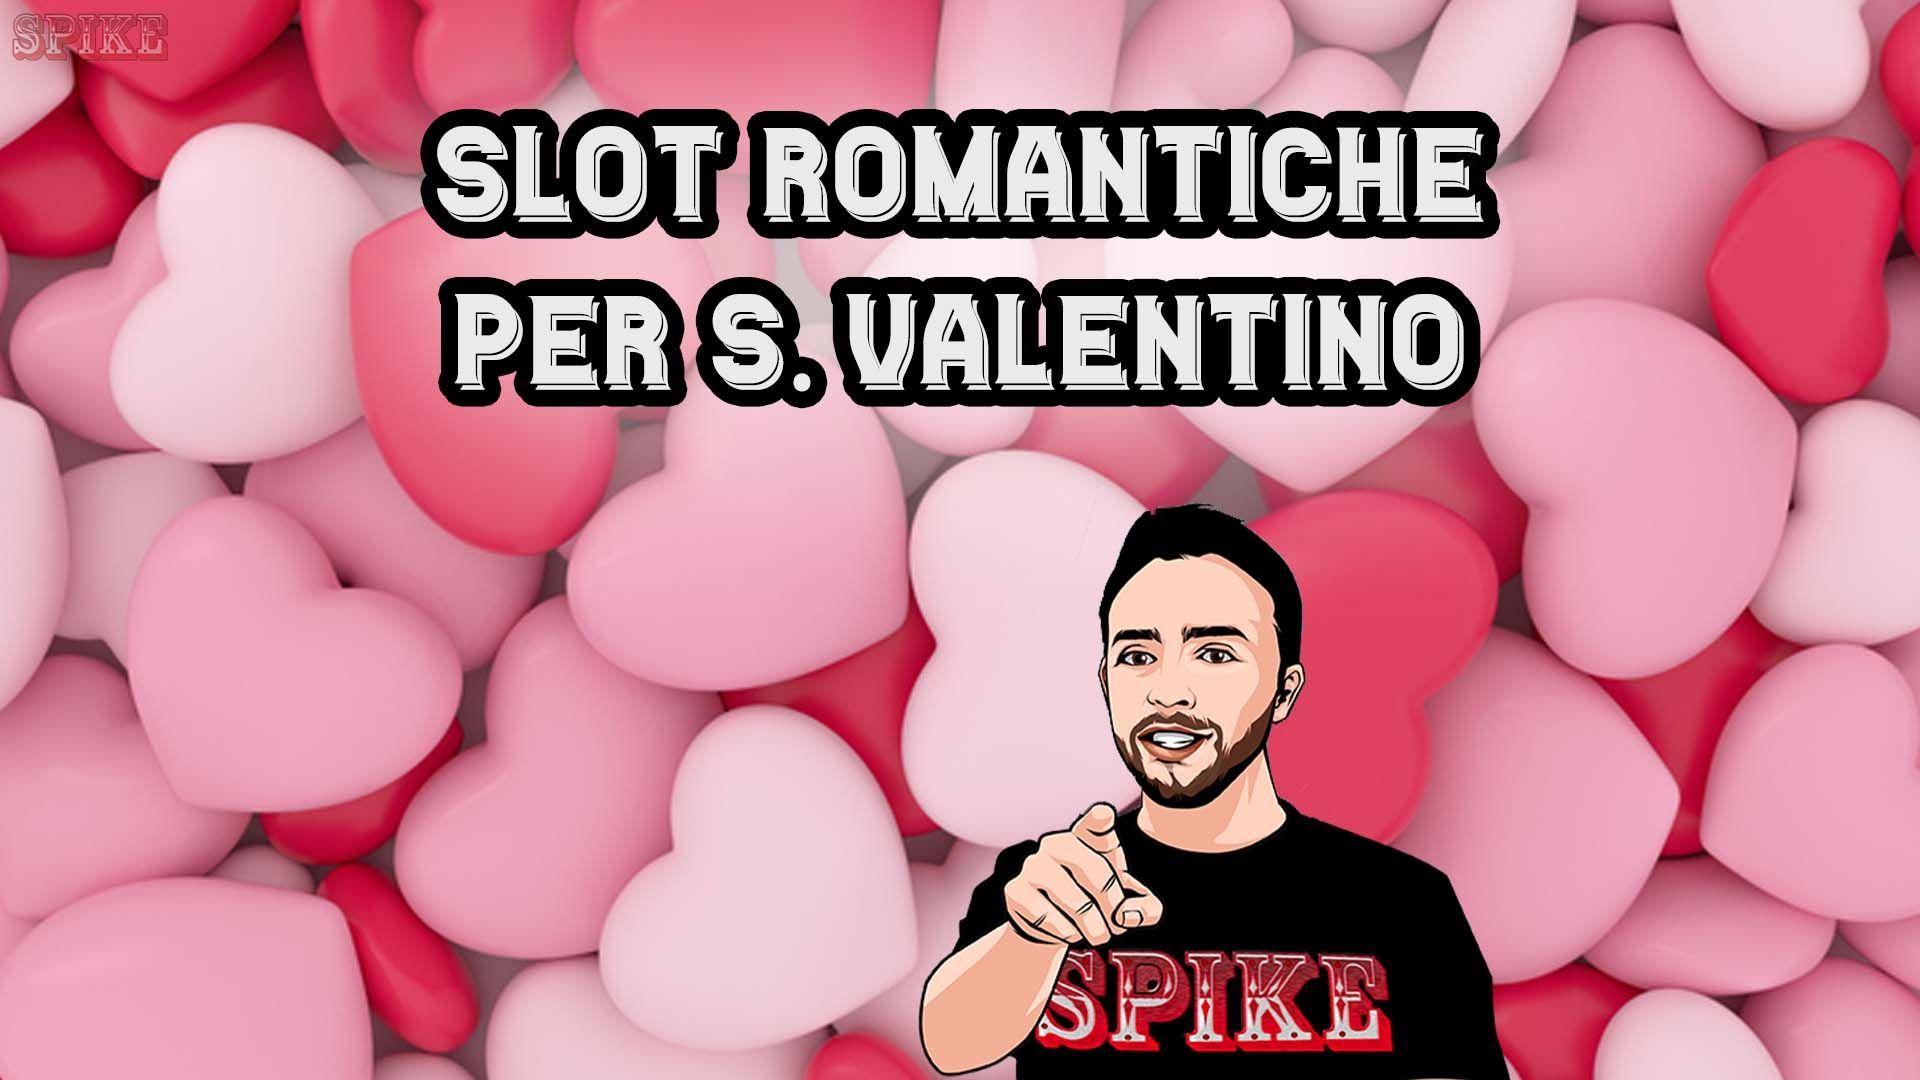 Slot Romantiche